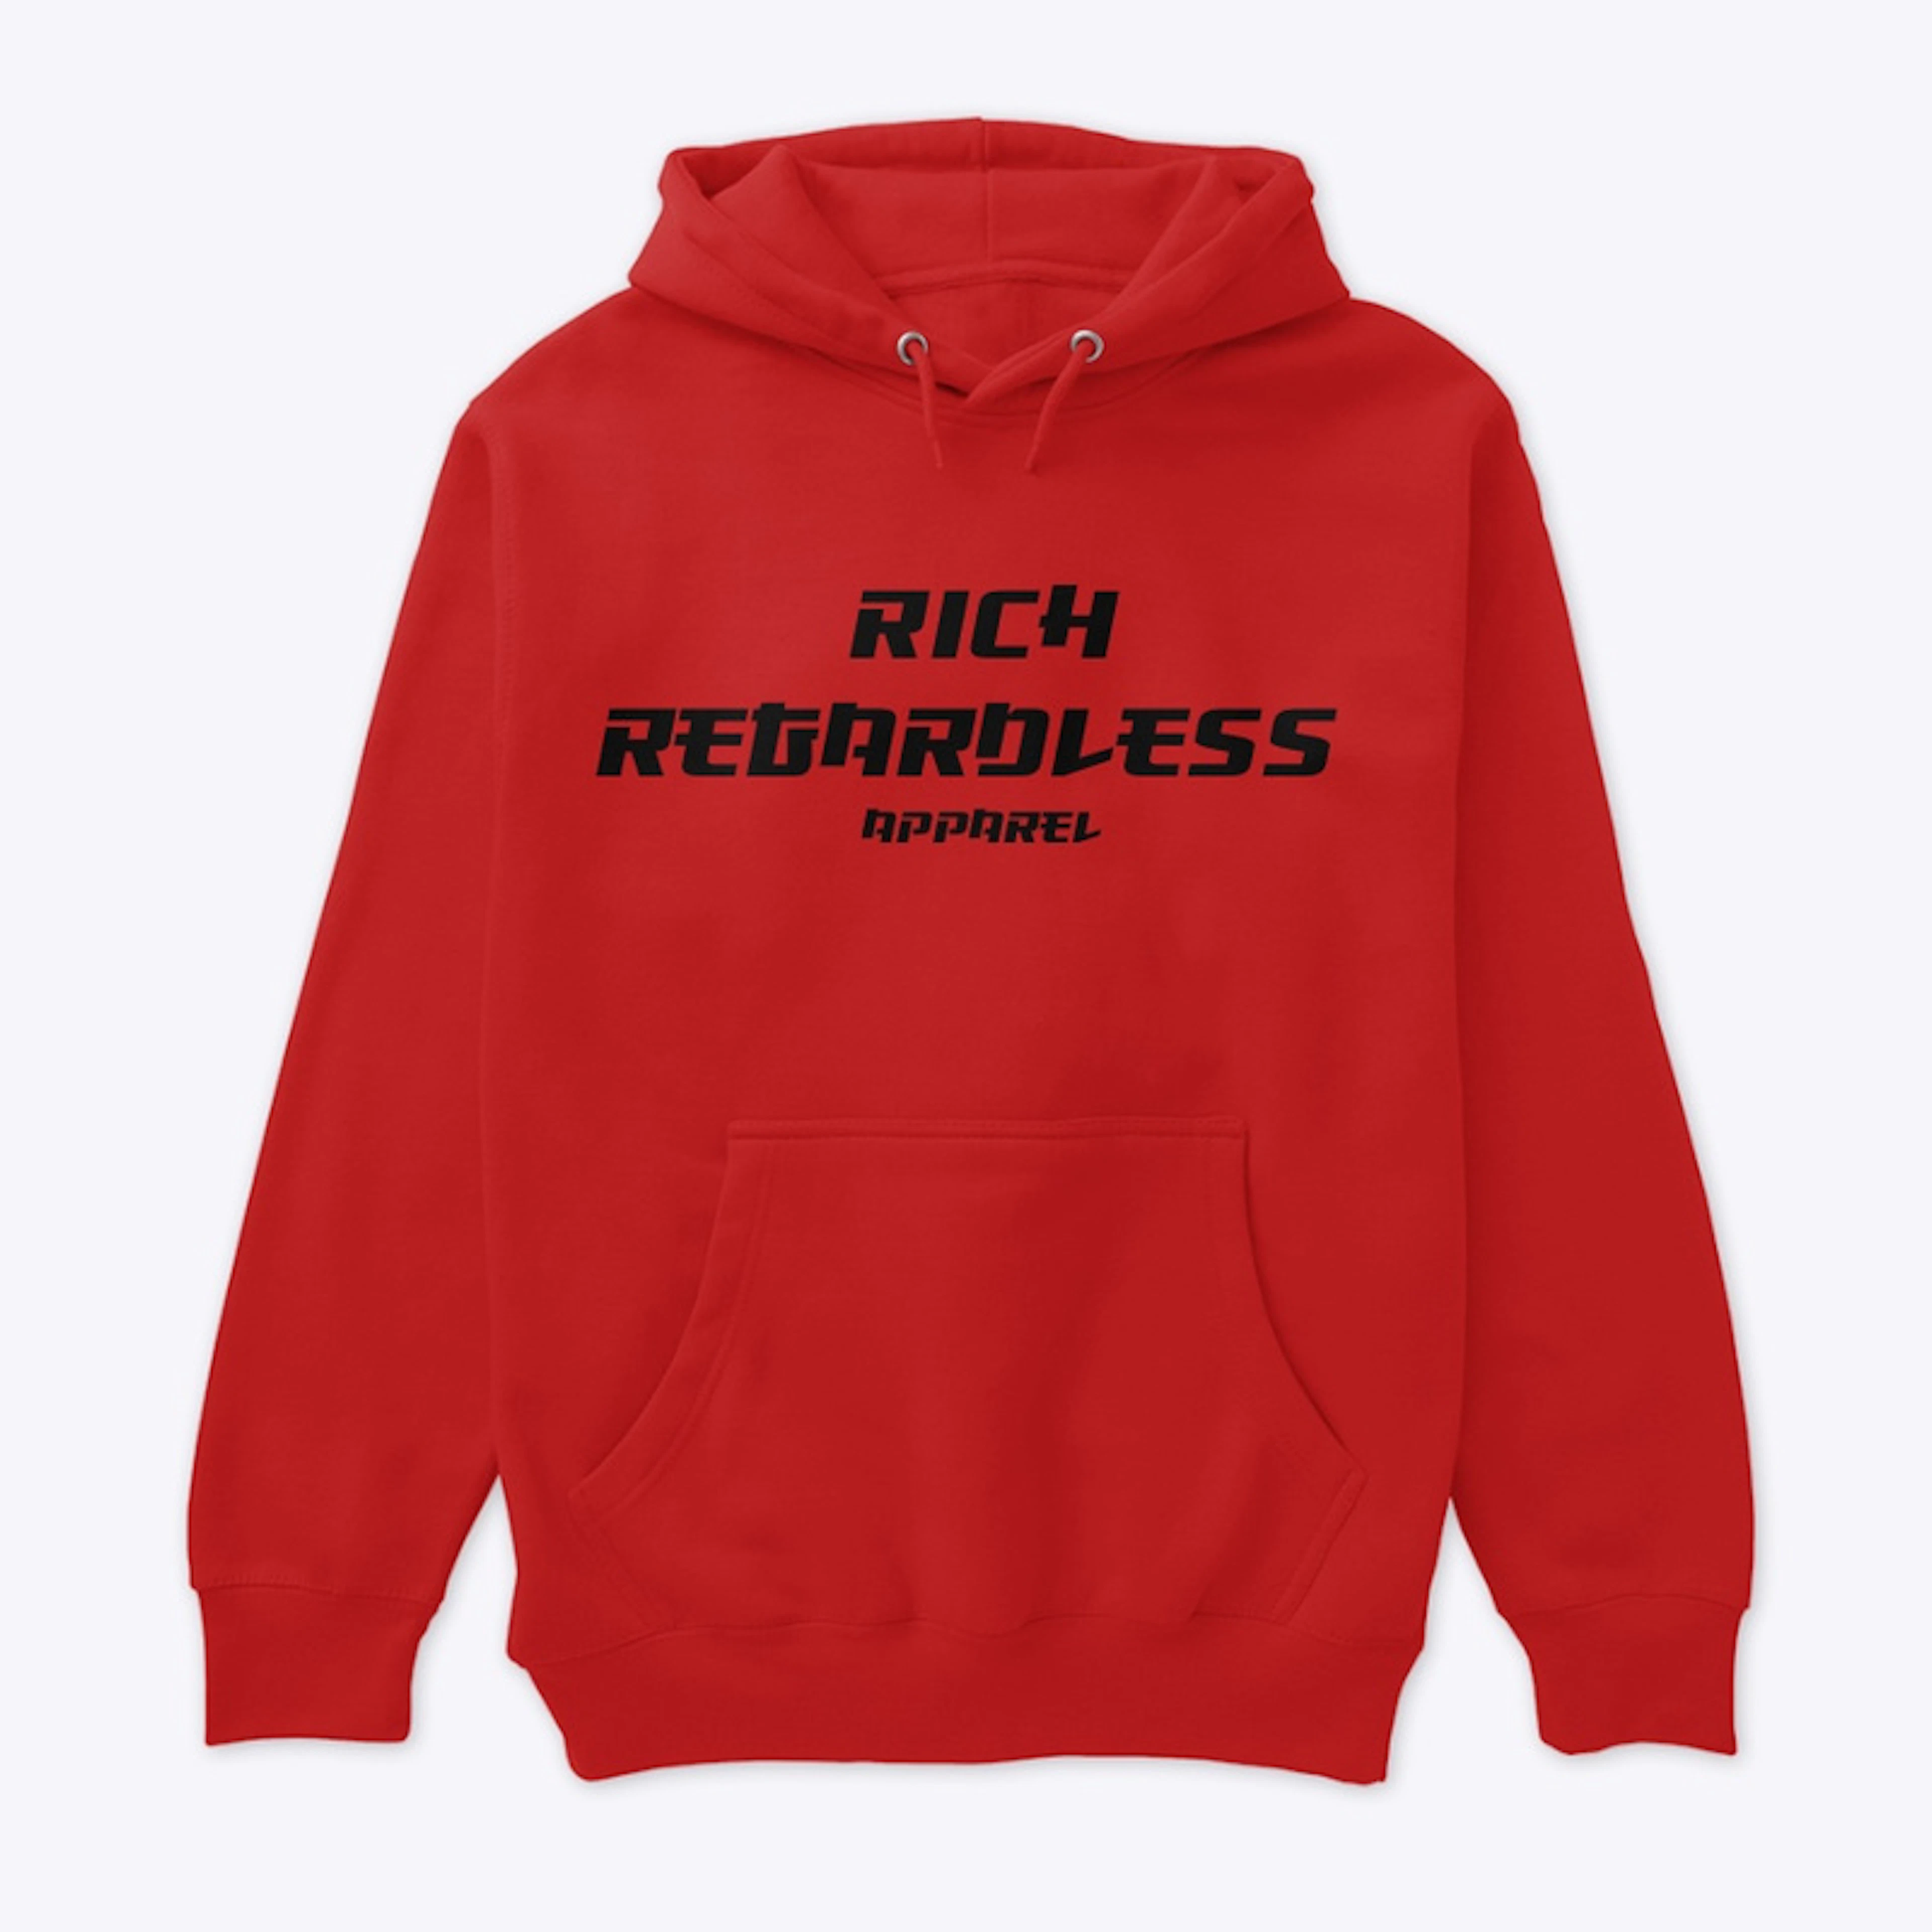 RichRegardless Basic hoodie